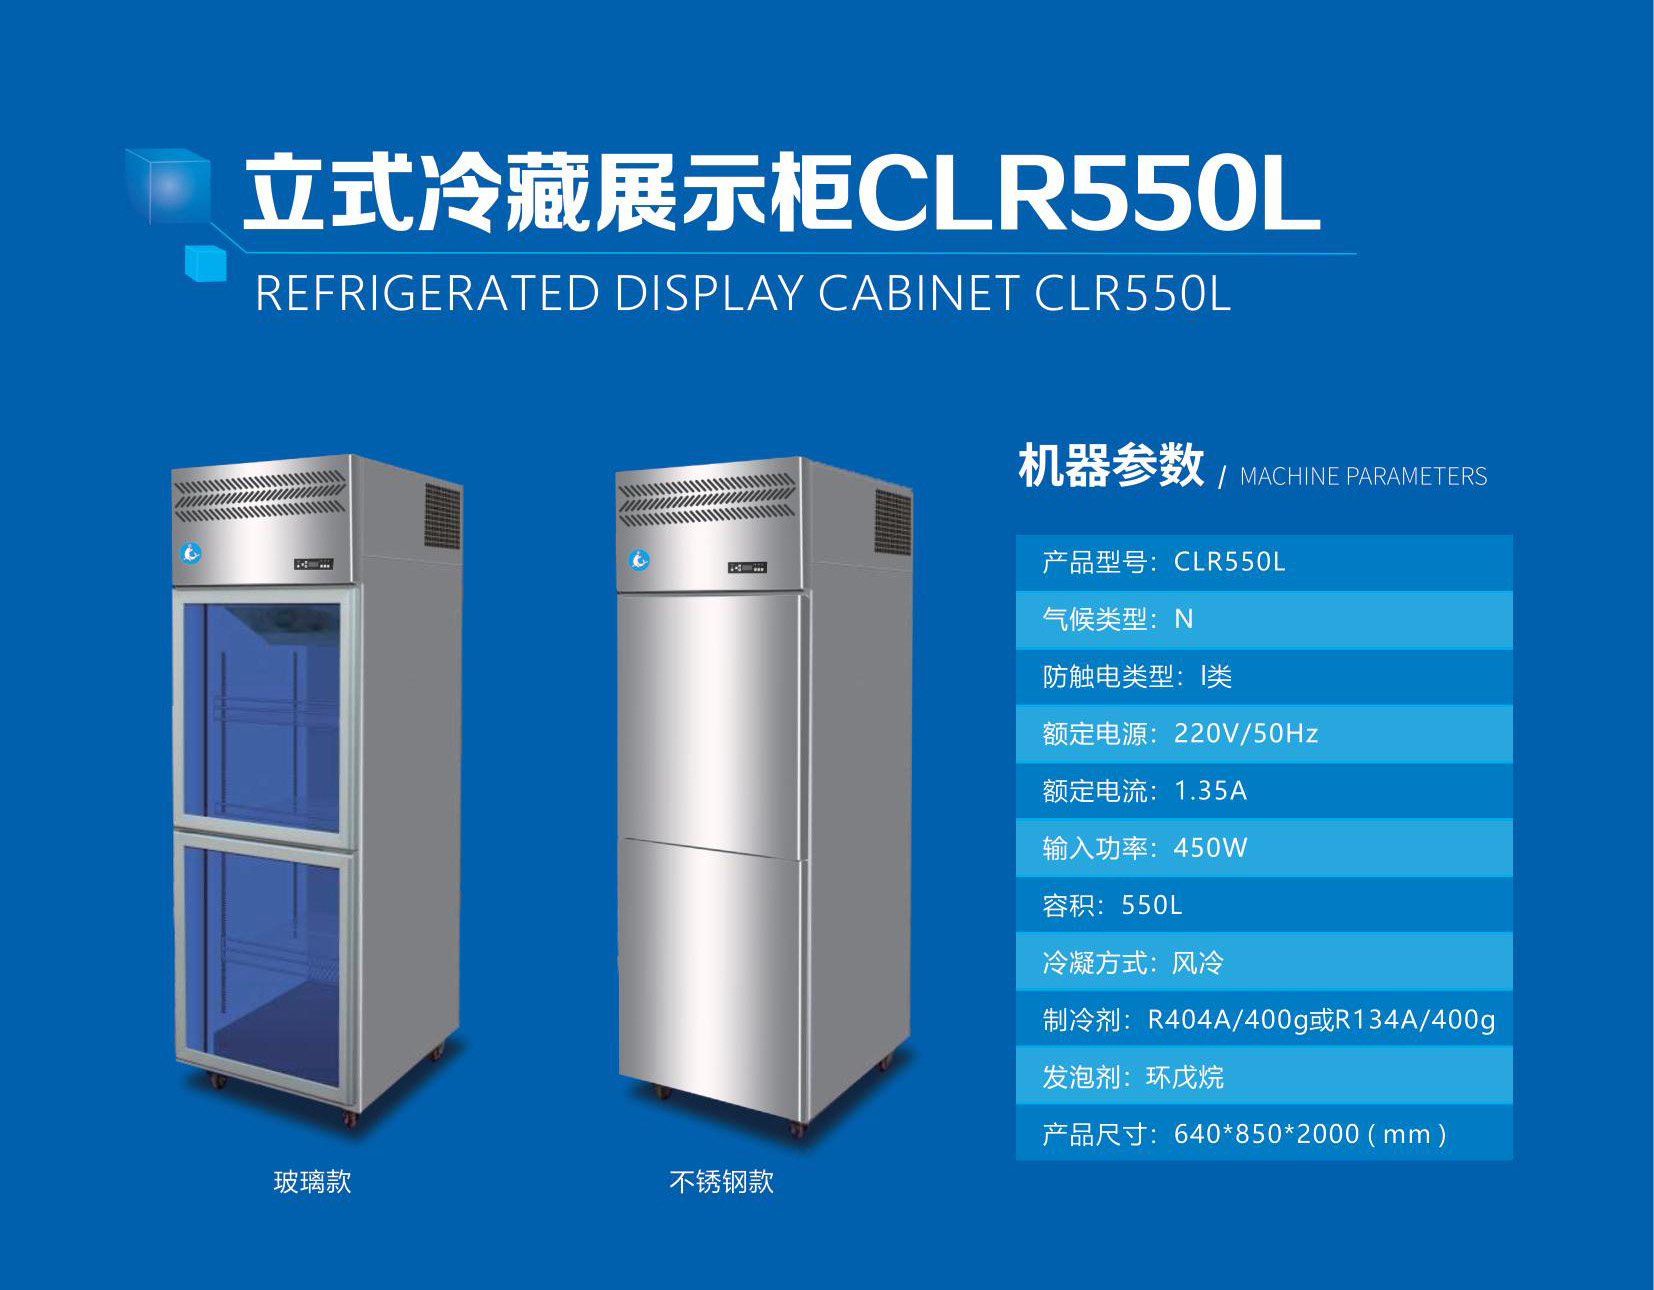 立式冷藏展示柜保鲜饮料柜啤酒柜超市商用冰箱大容量冰柜CL550L